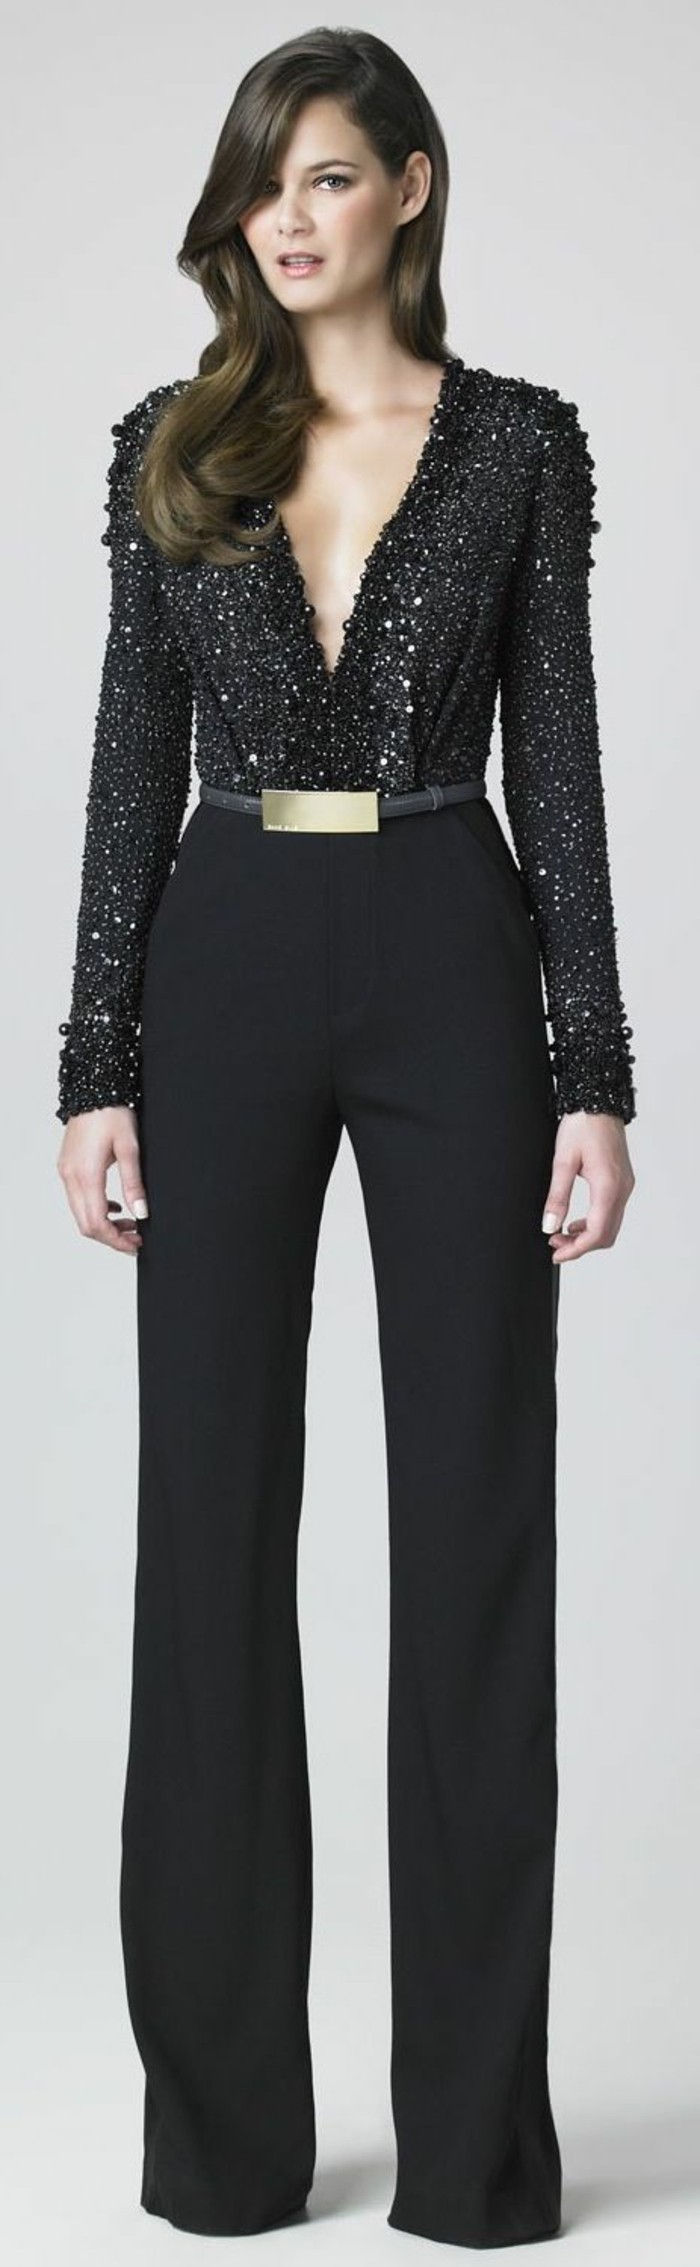 9-chic-dress-black-skjorte bukser og gull Guertel-glitter-effekt-Mitel lang hår